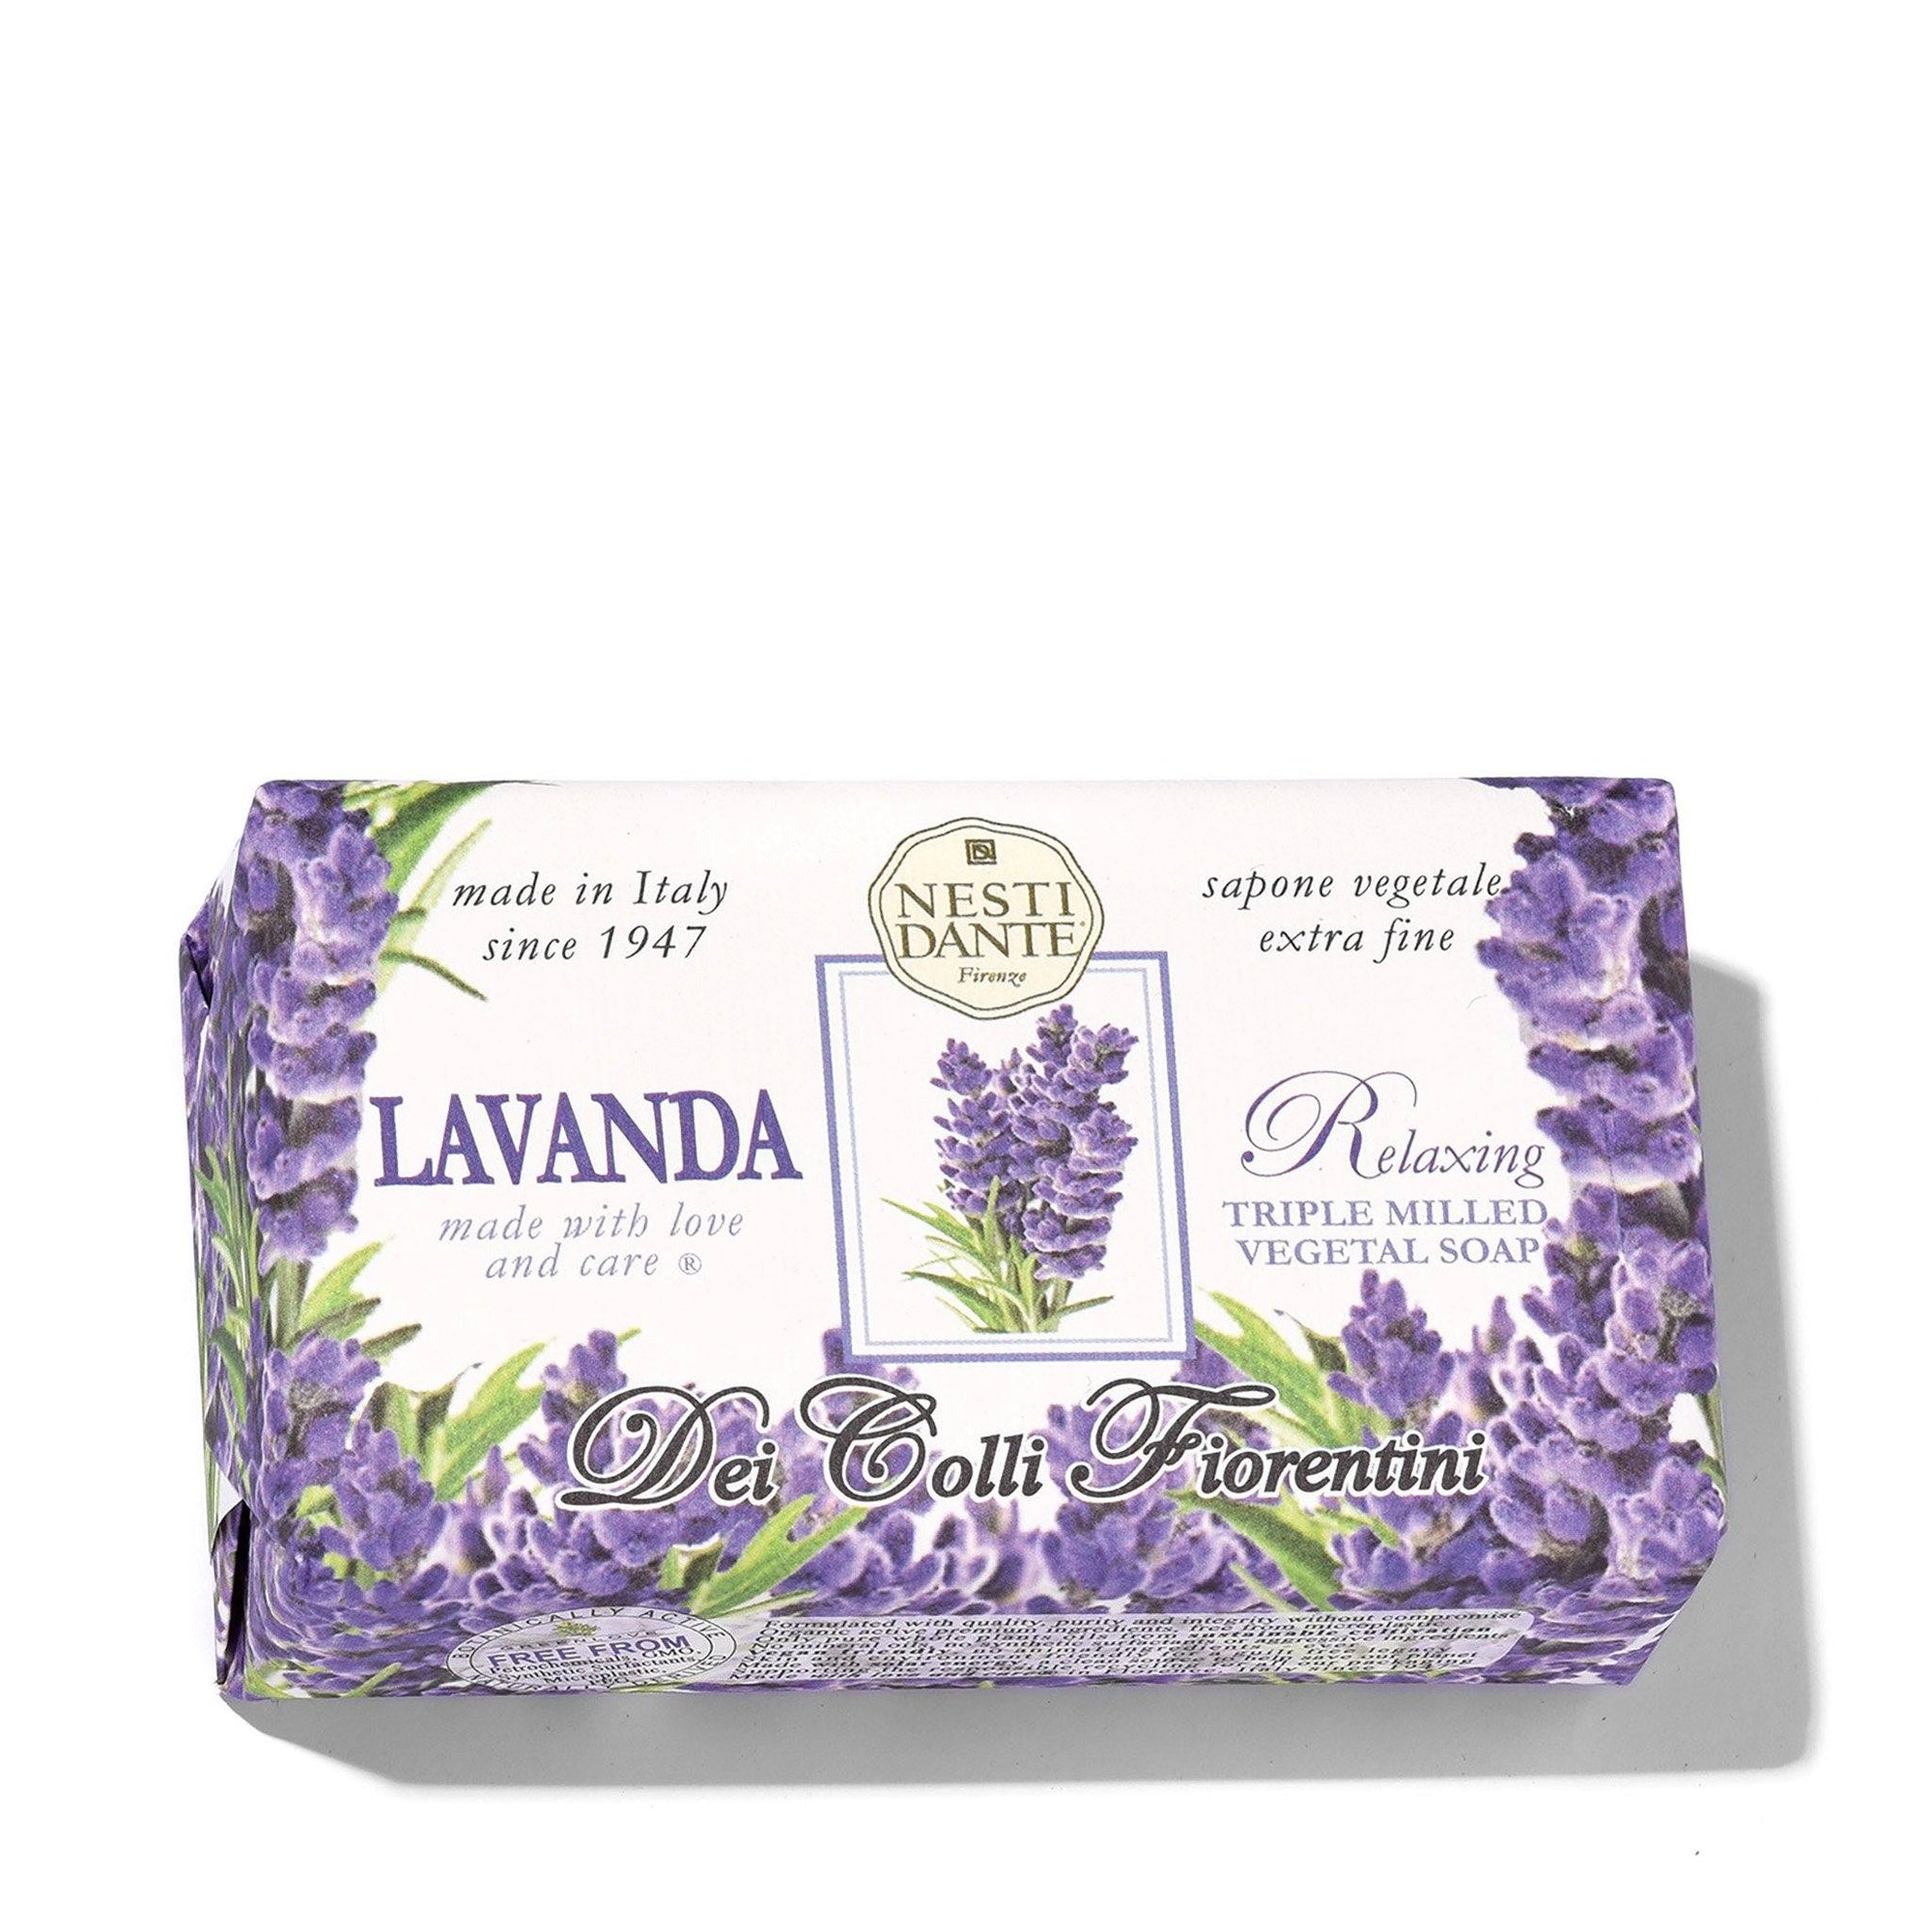 Nesti Dante Tuscan Lavender Natural Italian Soap - WxDxH - 837524000168